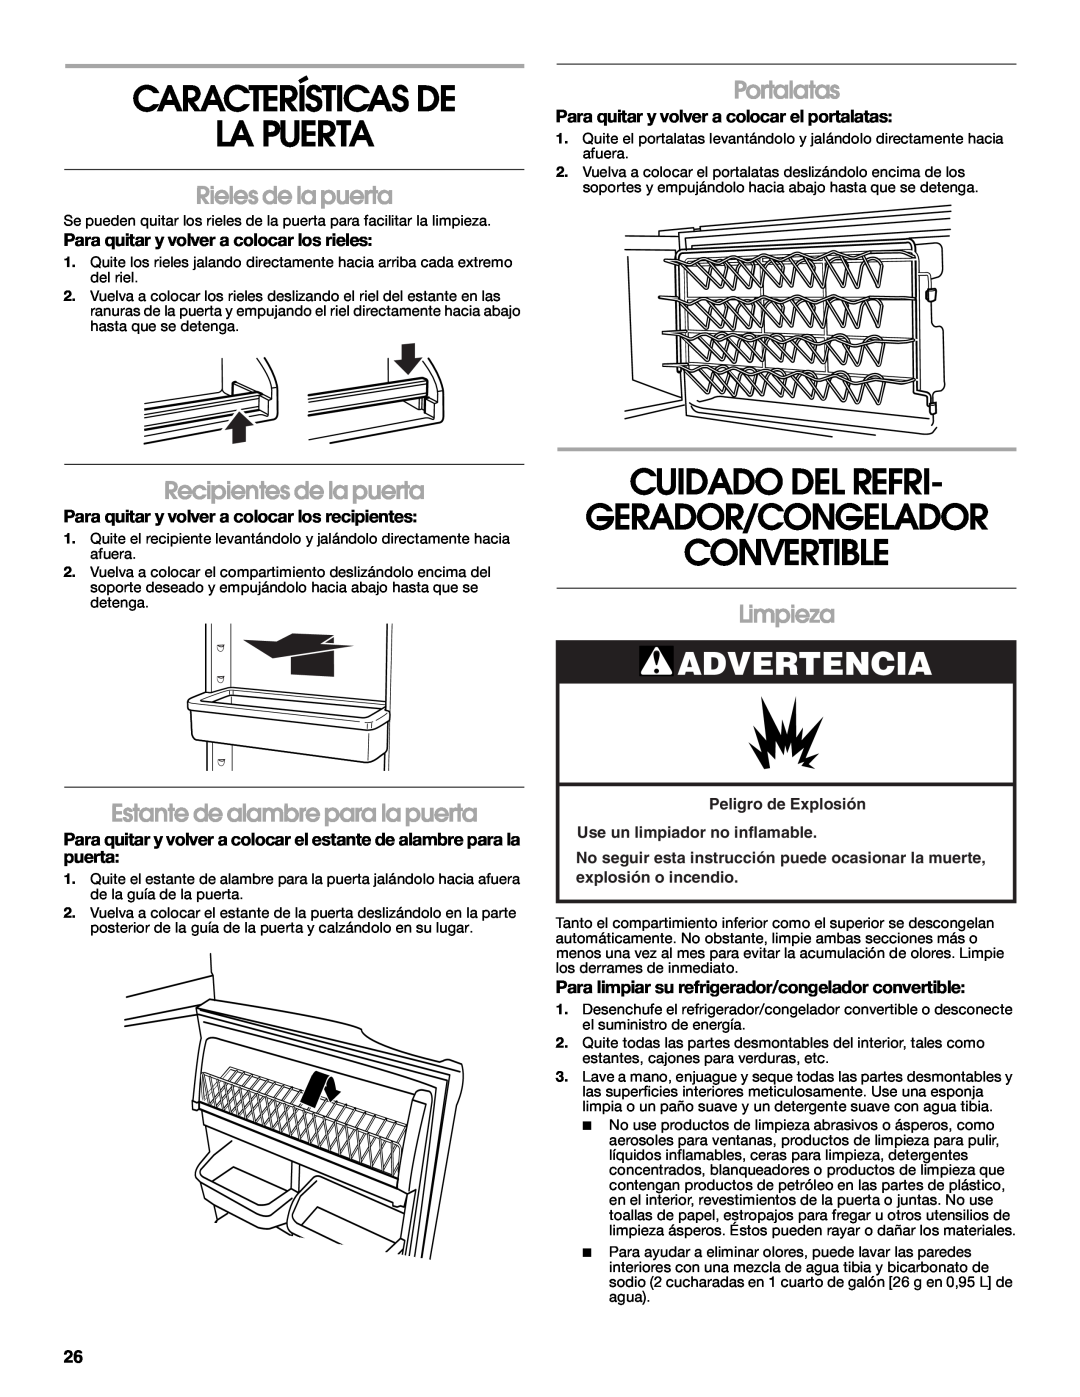 Whirlpool GAFZ21XXRK01 Características De La Puerta, Cuidado Del Refri Gerador/Congelador Convertible, Rieles de la puerta 